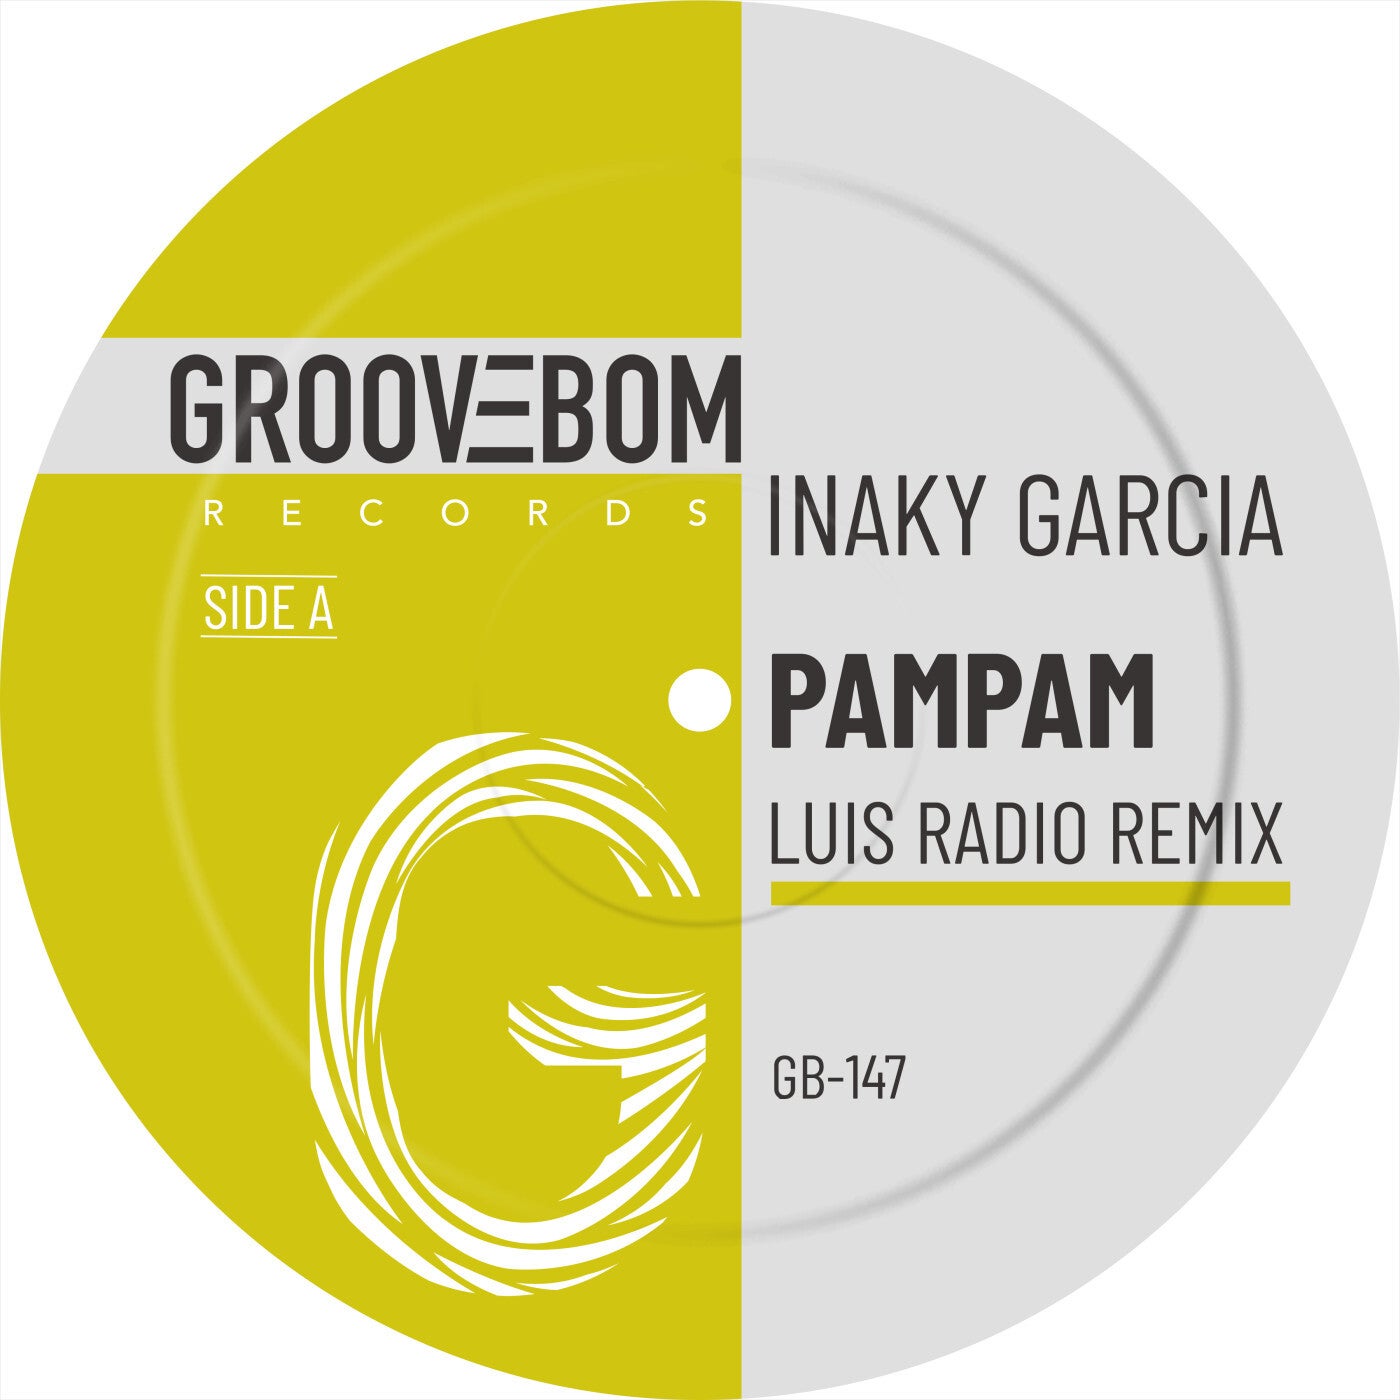 PamPam (Luis Radio Remix)